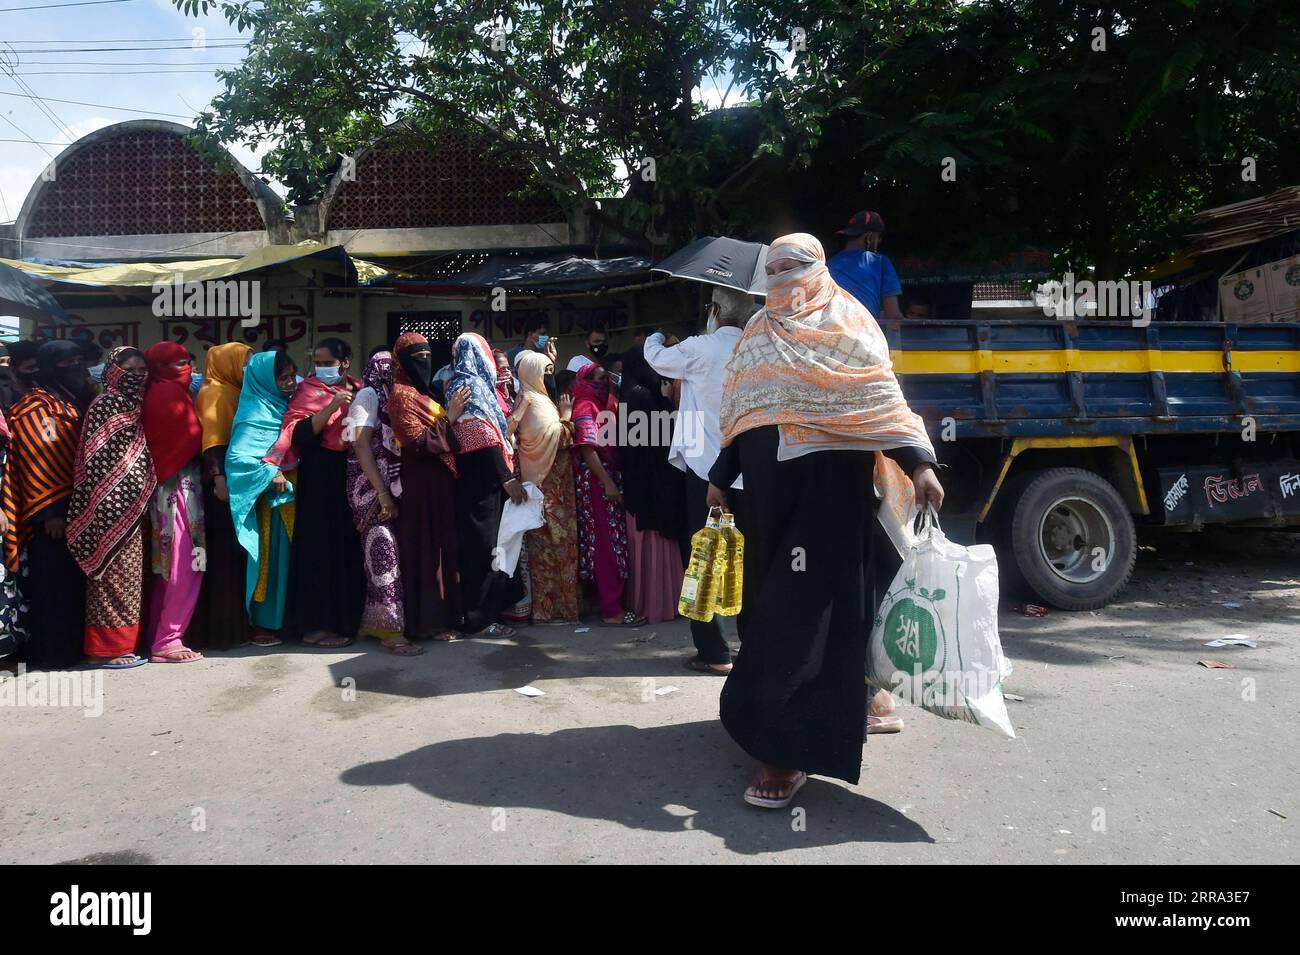 210713 -- DHAKA, 13. Juli 2021 -- Eine Frau geht am 13. Juli 2021 nach dem Einkaufen in einem von der Regierung betriebenen mobilen Geschäft zu fairen Preisen in Dhaka, Bangladesch. Die Regierung Bangladeschs hat fünf Pakete mit 32 Milliarden Take von rund 372 Millionen US-Dollar angekündigt, um einkommensschwachen Bevölkerungsgruppen zu helfen, die von der COVID-19-Pandemie betroffen sind. BANGLADESCH-DHAKA-COVID-19-SUPPORT-PAKETE Salim PUBLICATIONxNOTxINxCHN Stockfoto